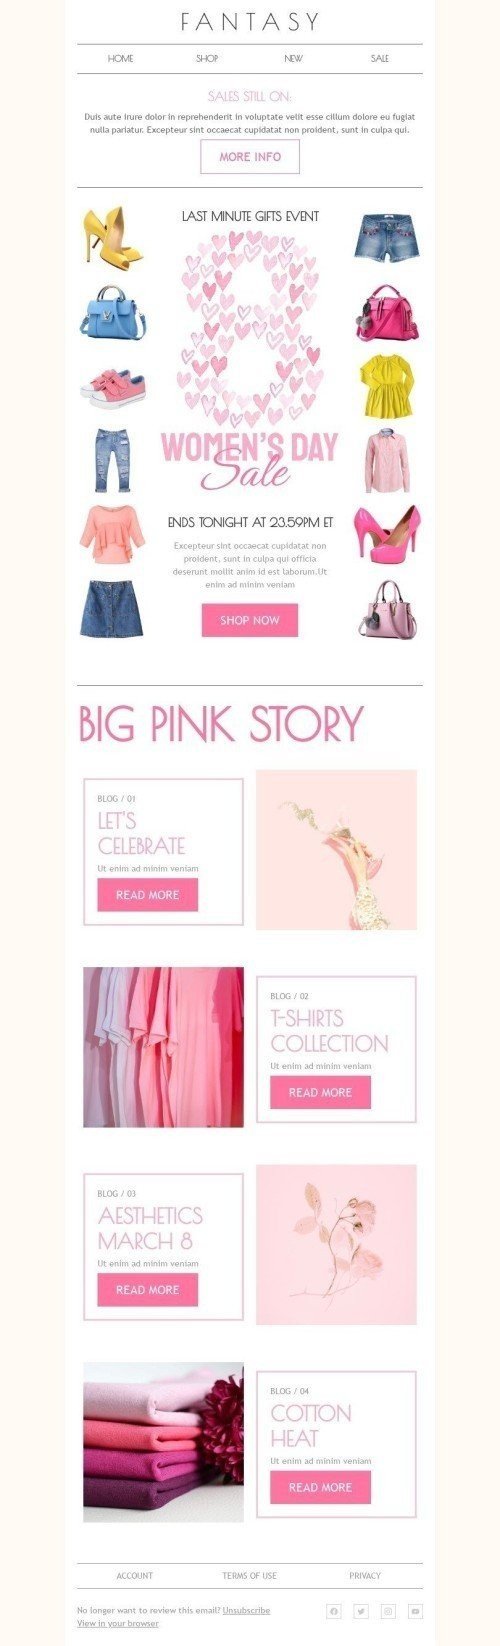 Plantilla de correo electrónico «Gran historia rosa» de Día de la Mujer para la industria de Moda Vista de escritorio